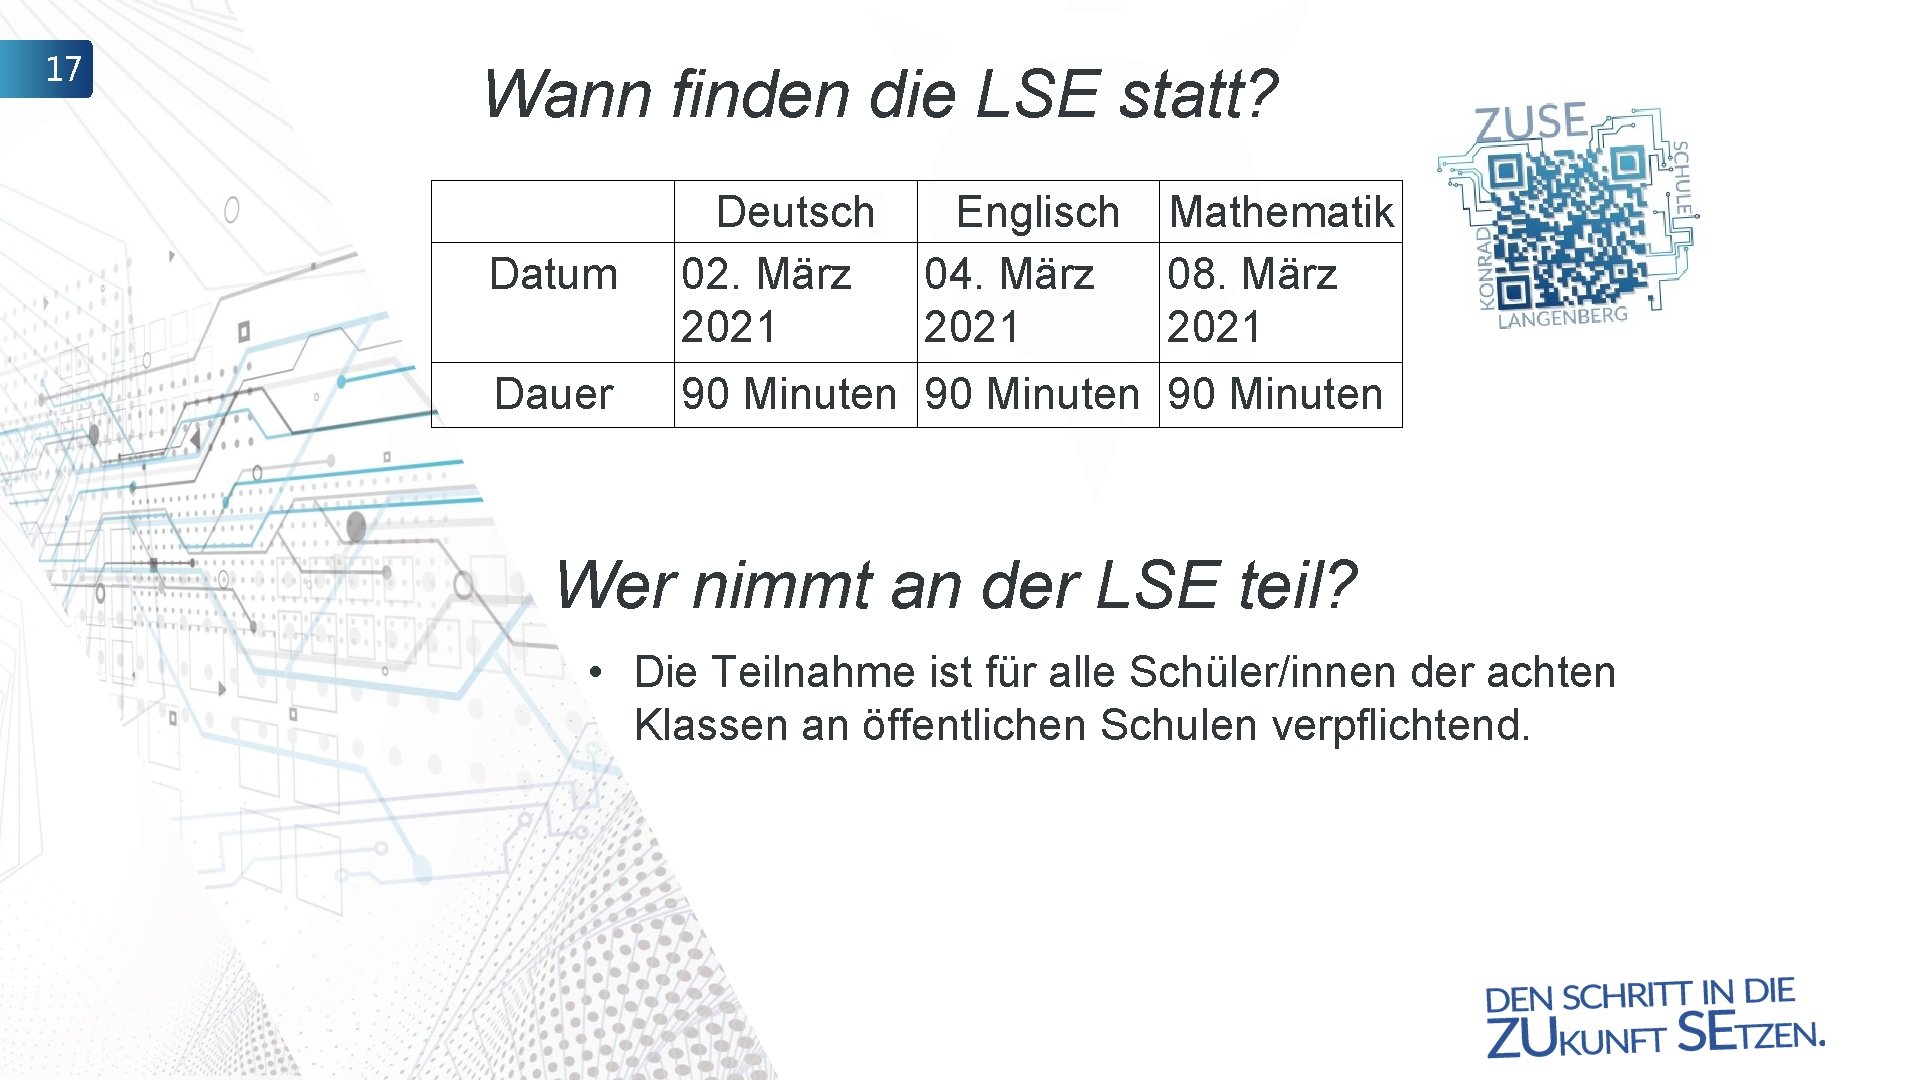 17 Wann finden die LSE statt? Datum Deutsch 02. März 2021 Englisch 04. März